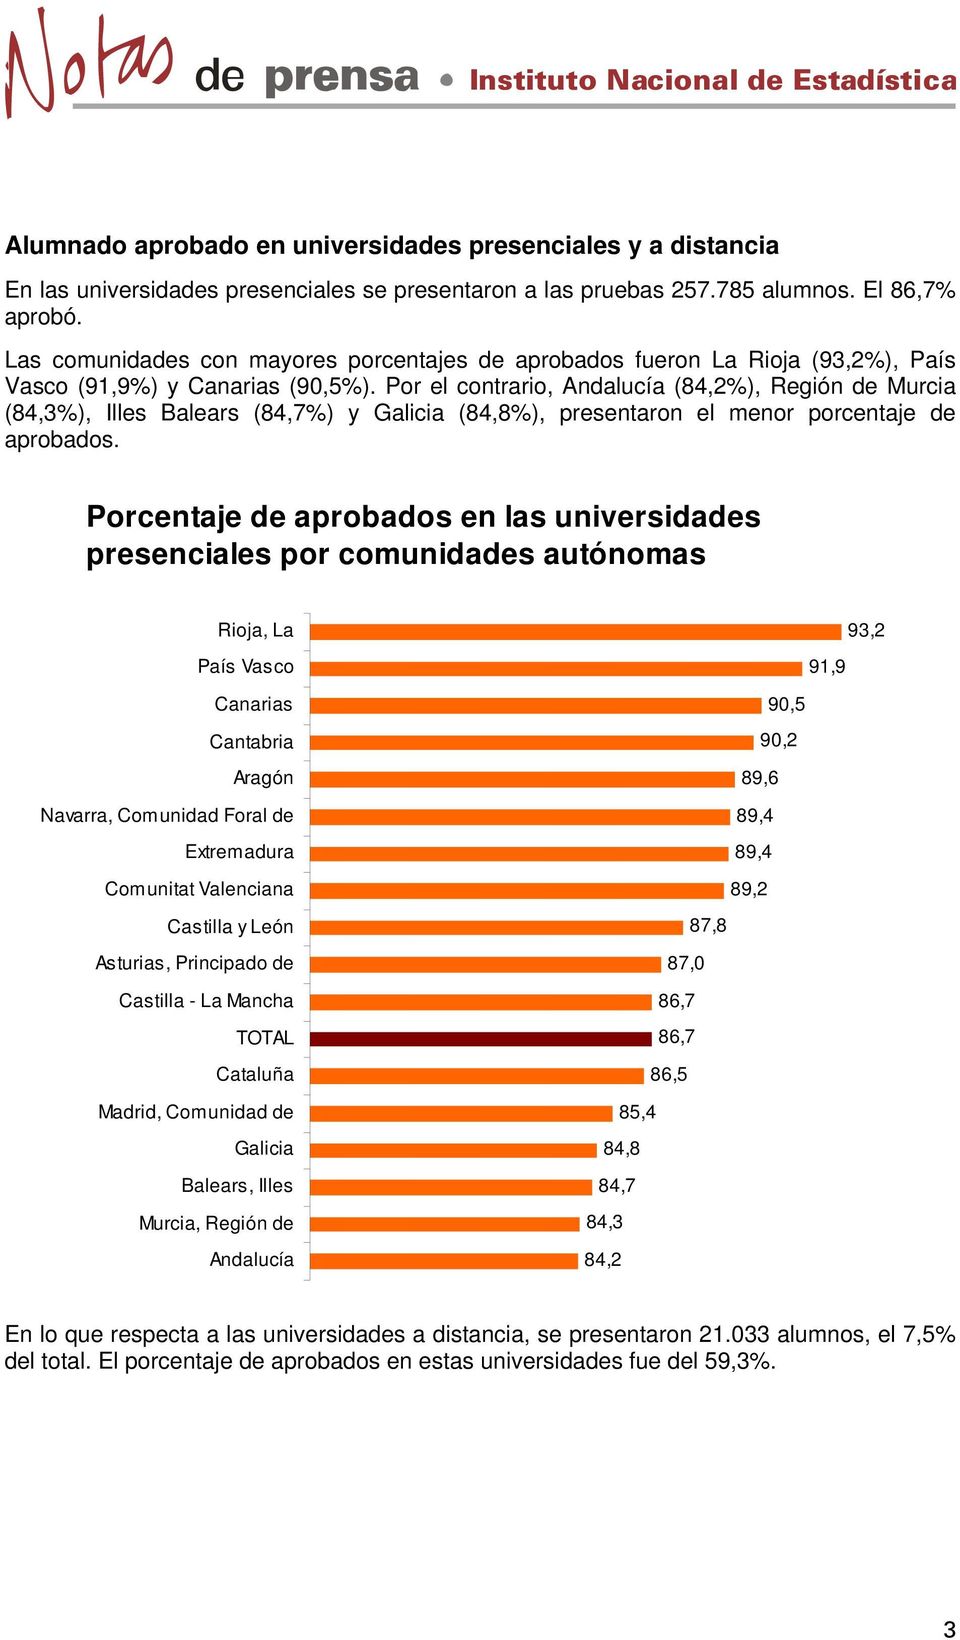 Por el contrario, Andalucía (84,2%), Región de Murcia (84,3%), Illes Balears (84,7%) y Galicia (84,8%), presentaron el menor porcentaje de aprobados.